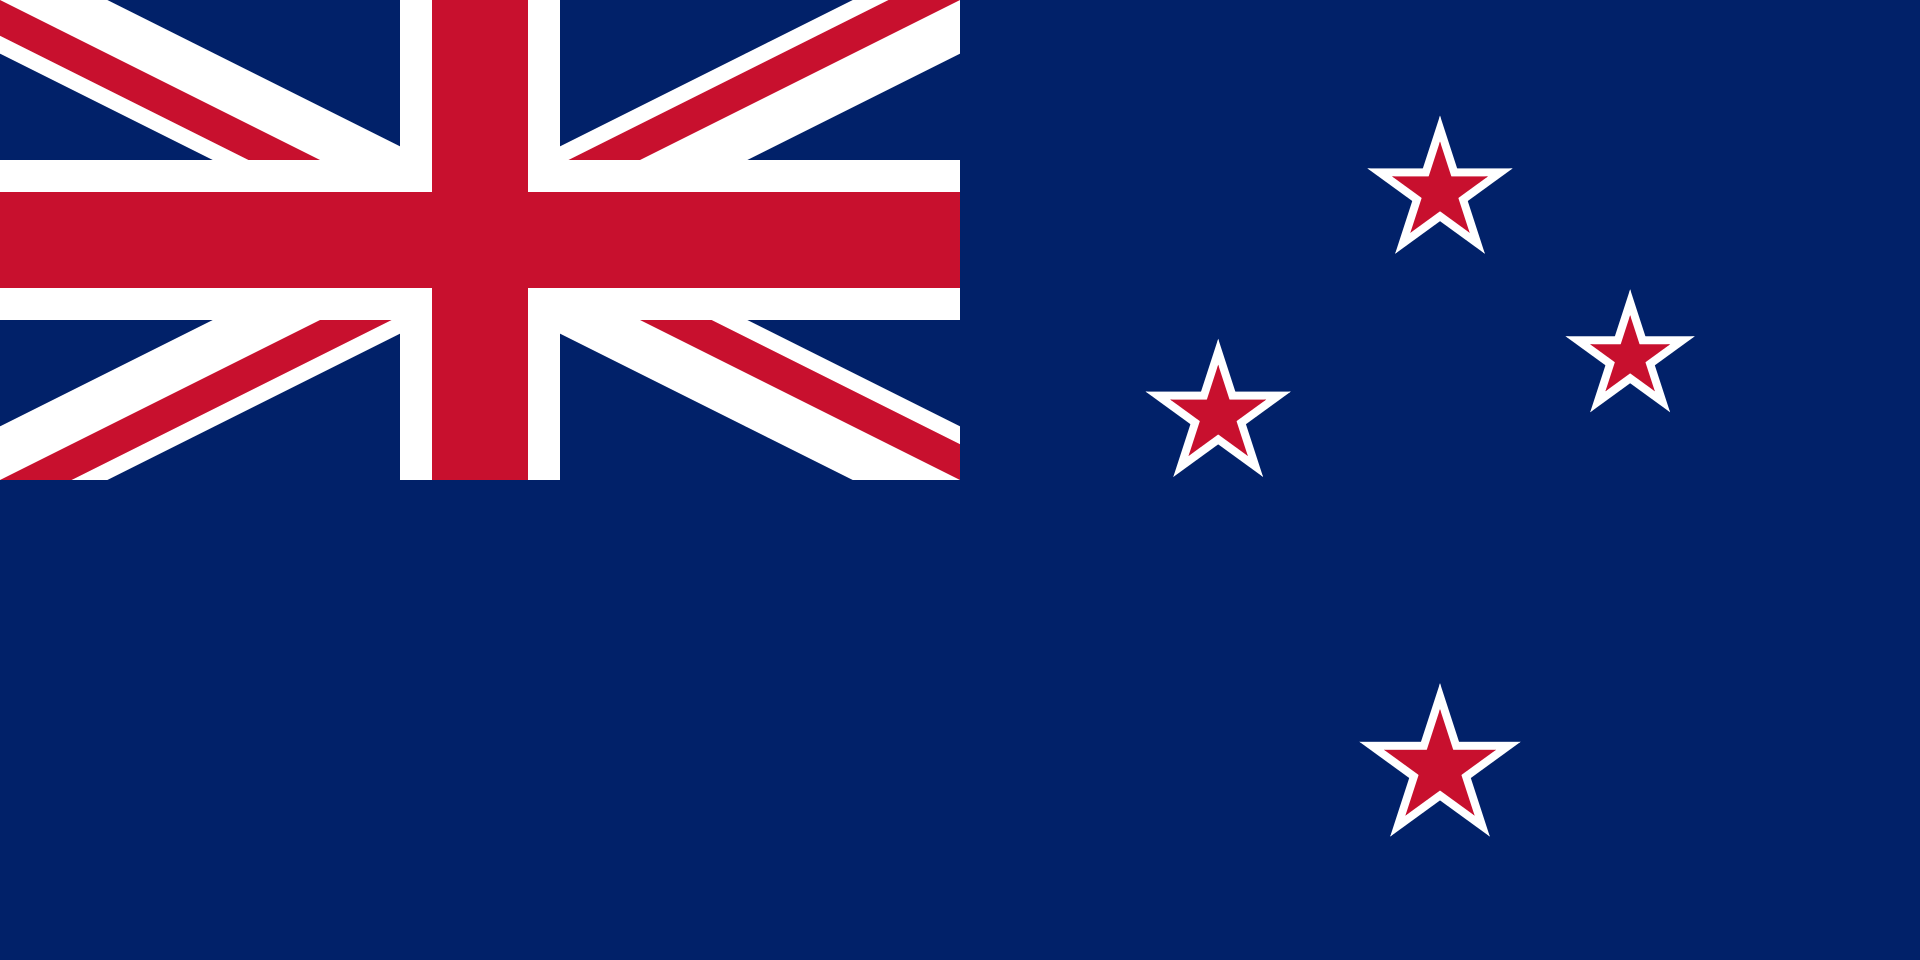 哪些国家或地区省市州等的旗子上有英国国旗求图片